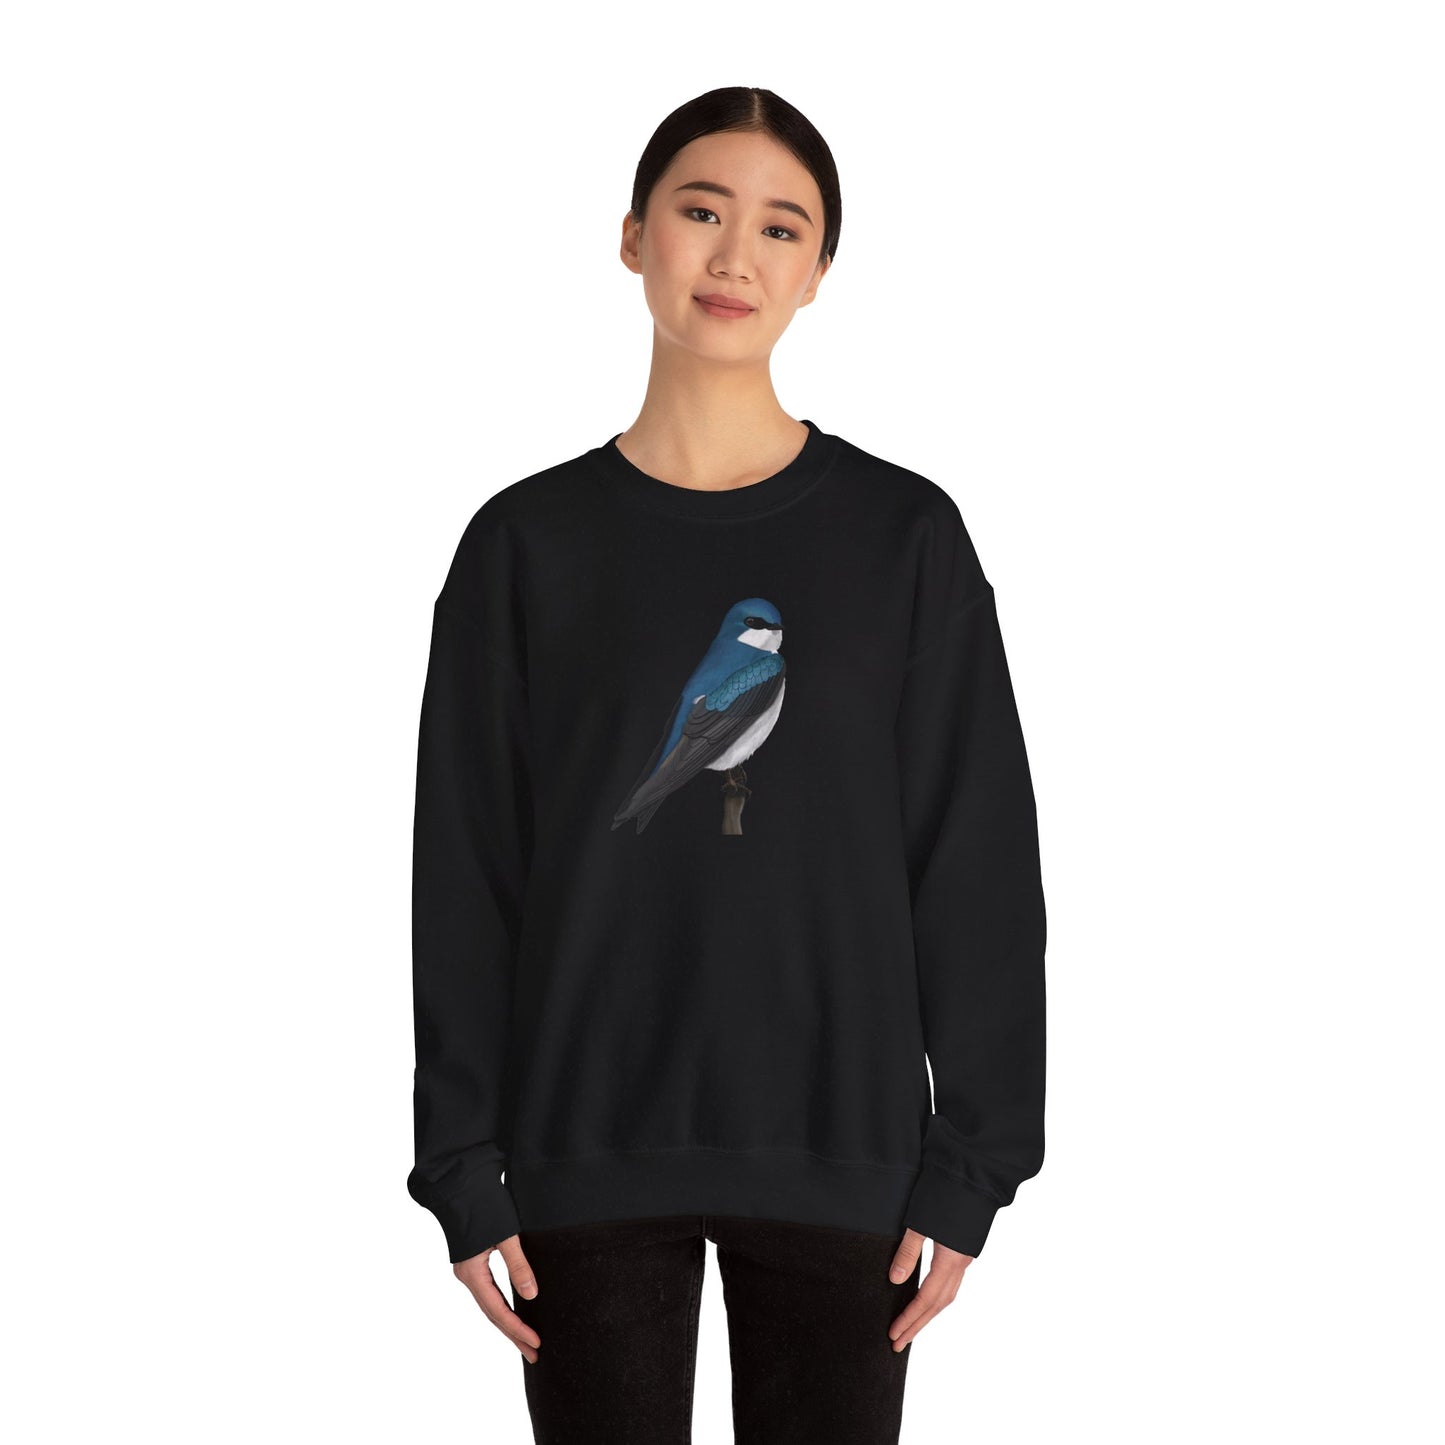 Tree Swallow Bird Watcher Biologist Crewneck Sweatshirt